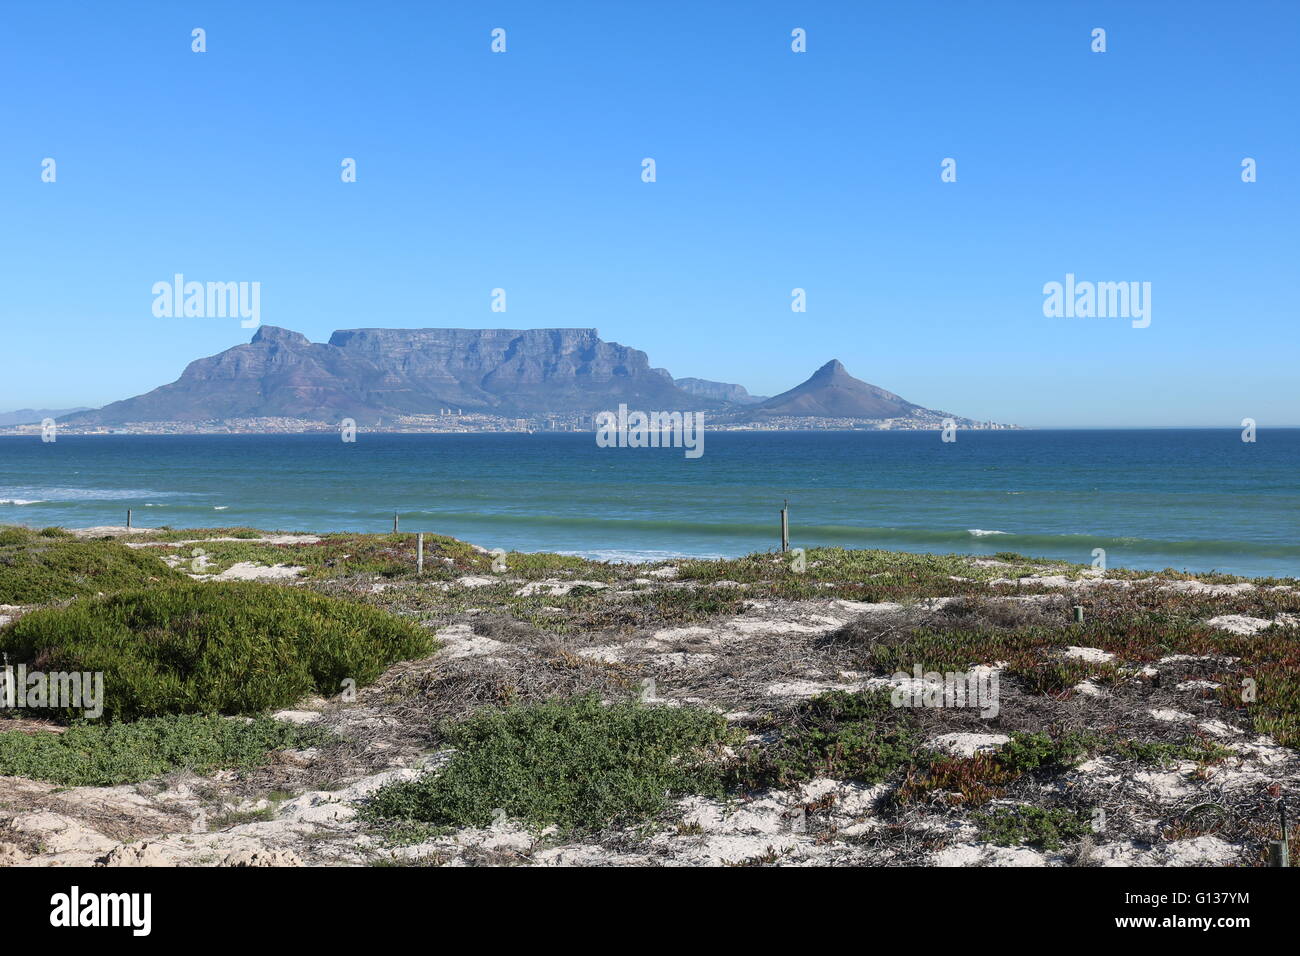 La montagne de la table vue de blouberg strand Cape town afrique du sud Banque D'Images